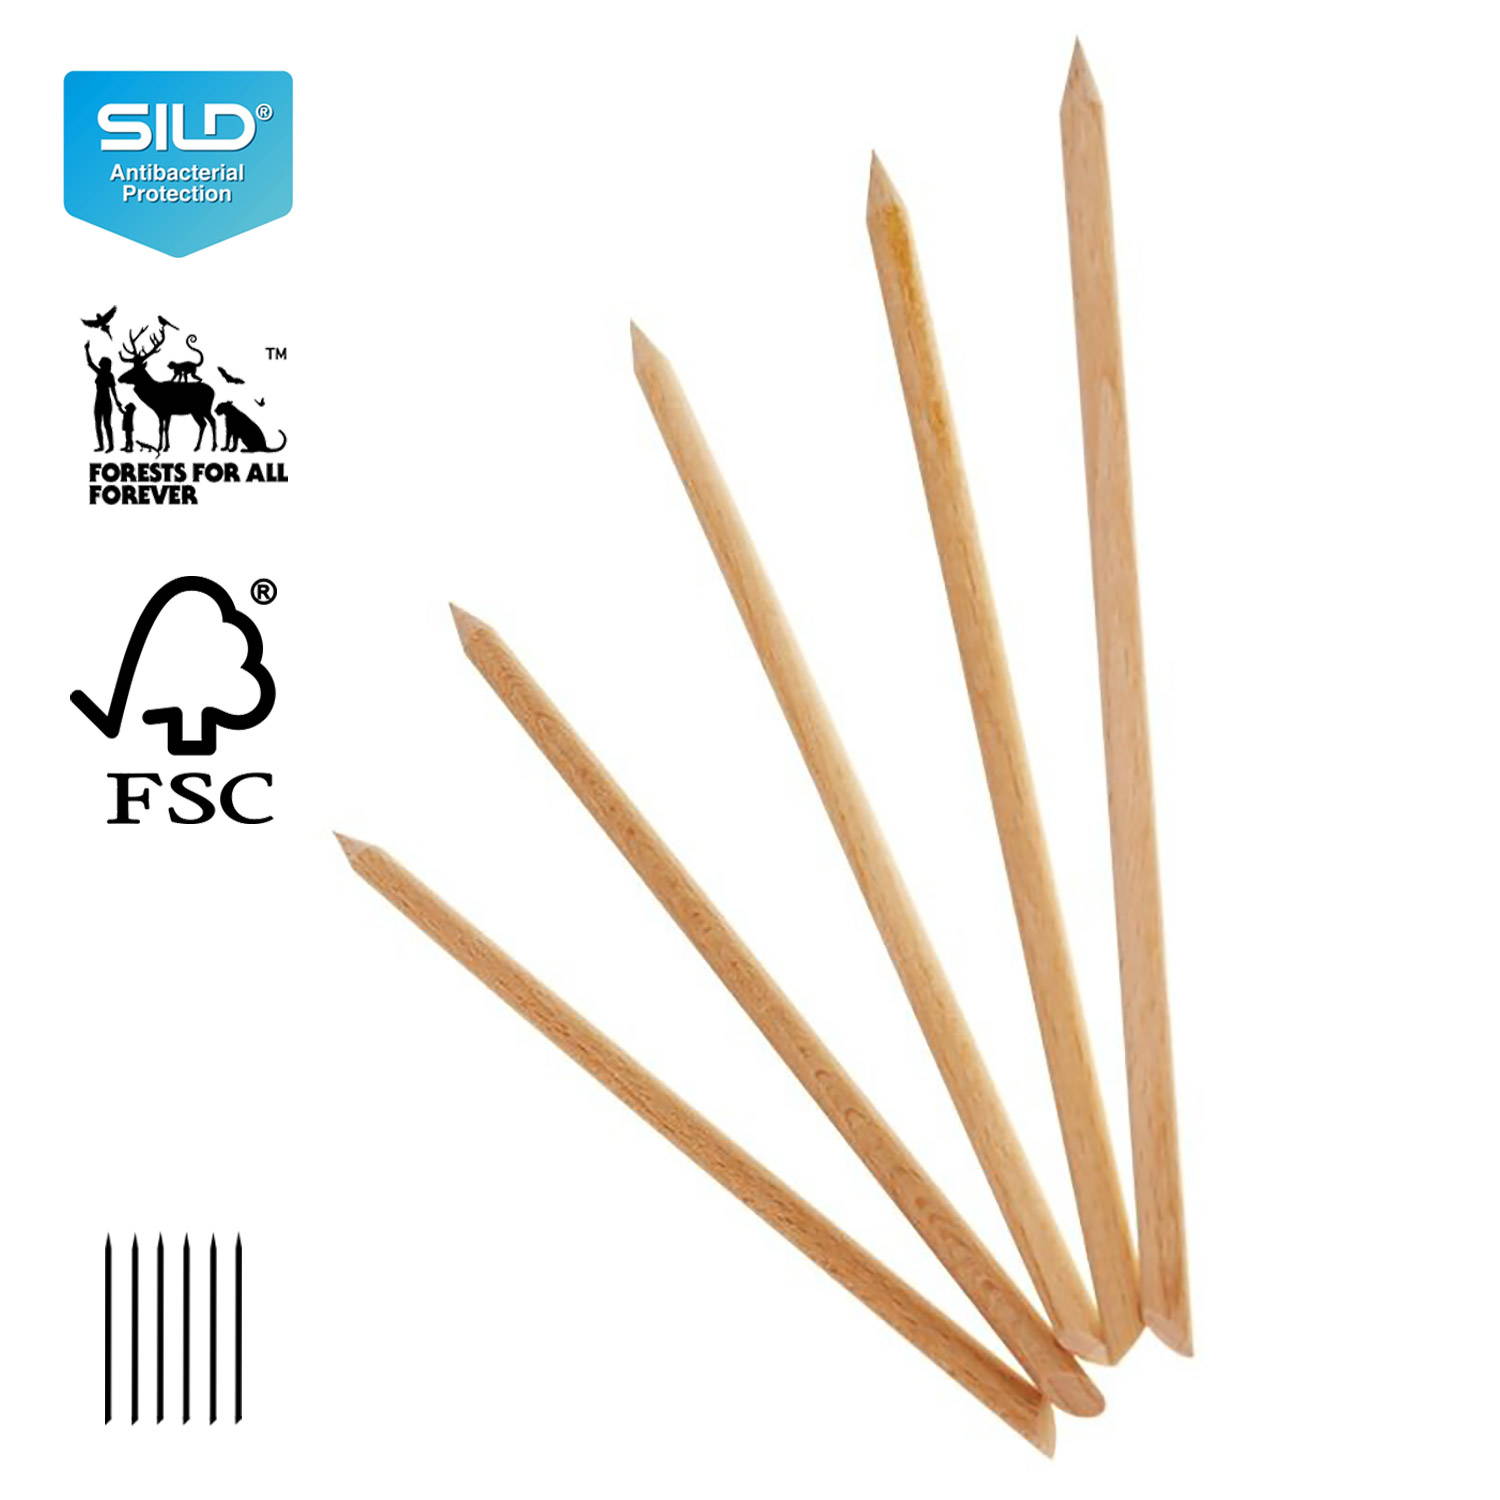 Mia Calnea - Manicure sticks 100pcs 110mm long - 4mm in diameter- 6009331 